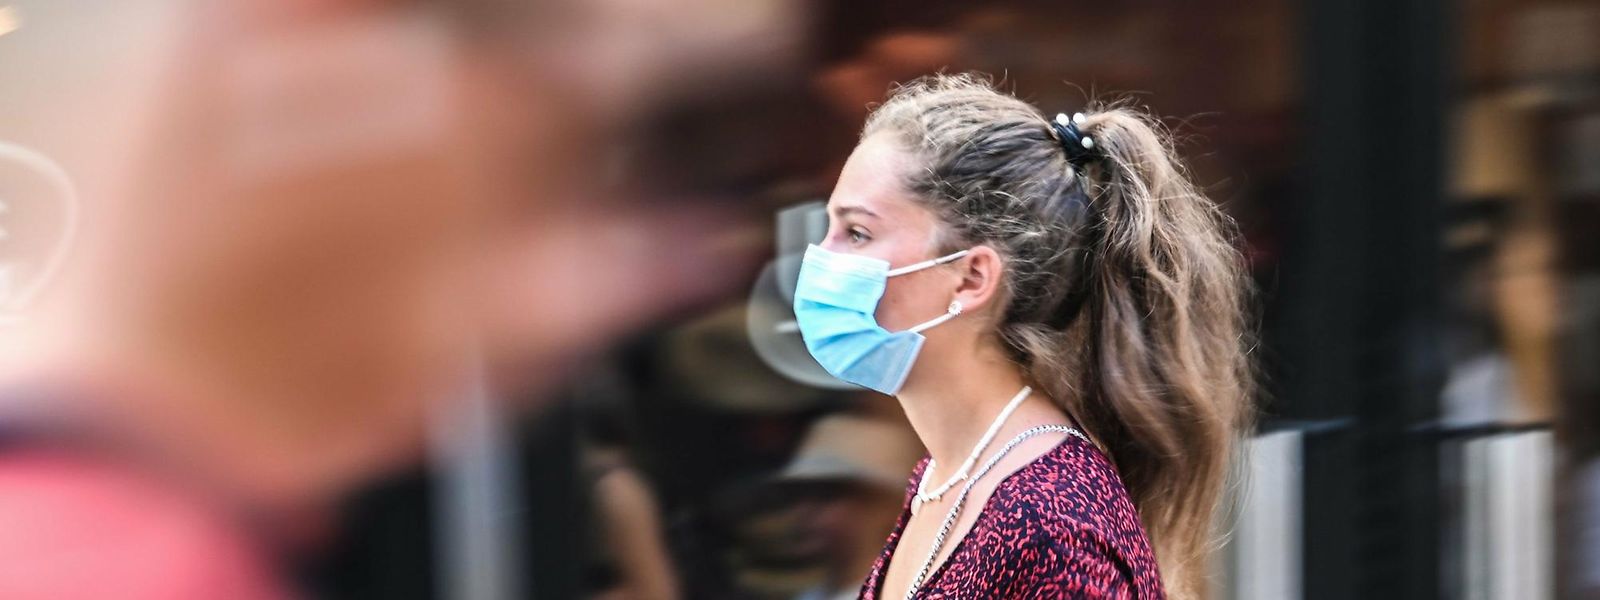 O uso da máscara e a desinfeção das mãos ajudou à diminuição dos casos de gripe no último ano.